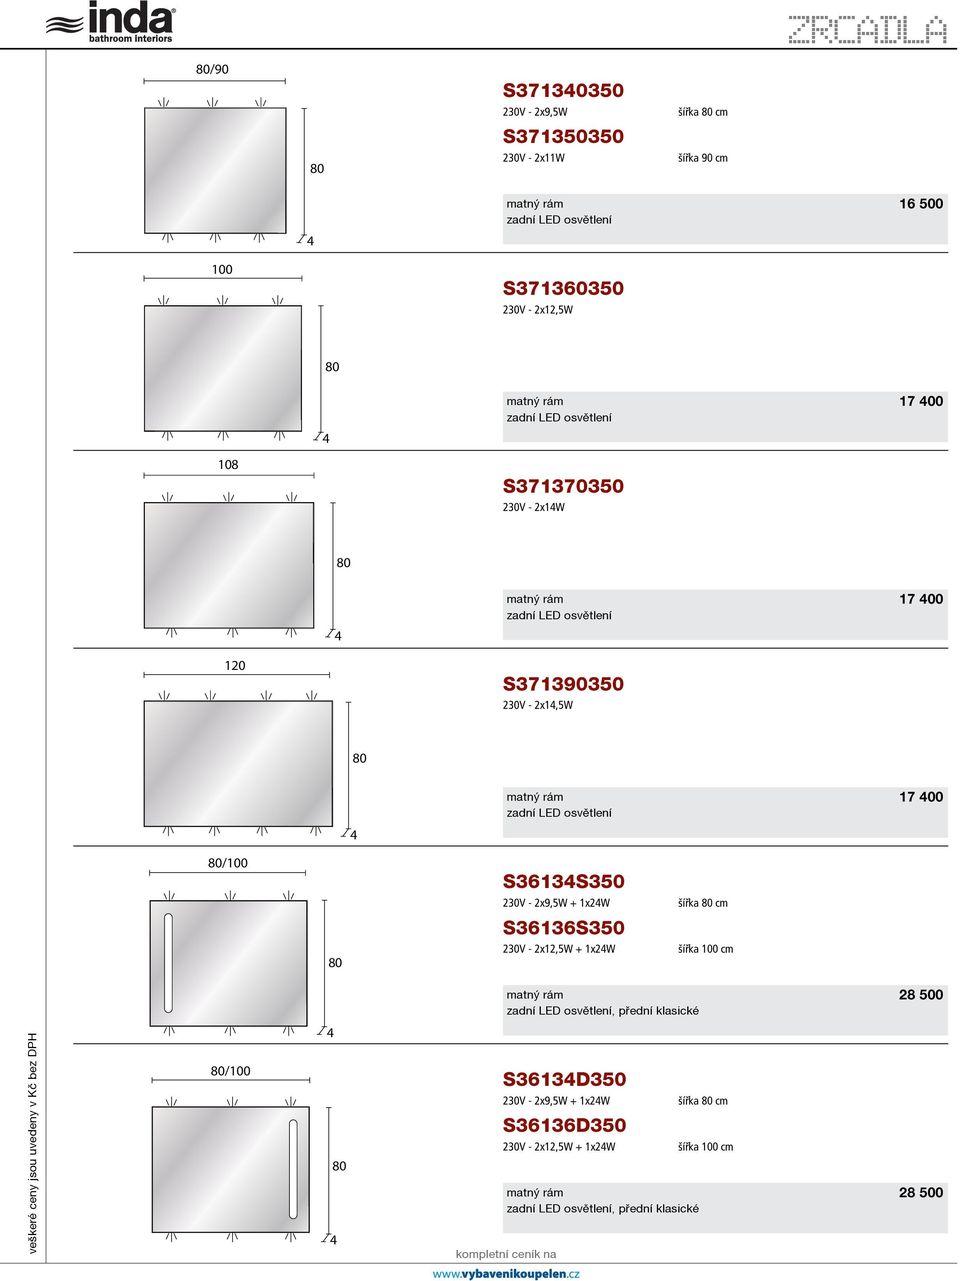 1x2W S36136S3 230V - 2x12,5W + 1x2W šířka cm šířka 100 cm zadní LED osvìtlení, pøední klasické 28 0 veškeré ceny jsou uvedeny v Kè bez